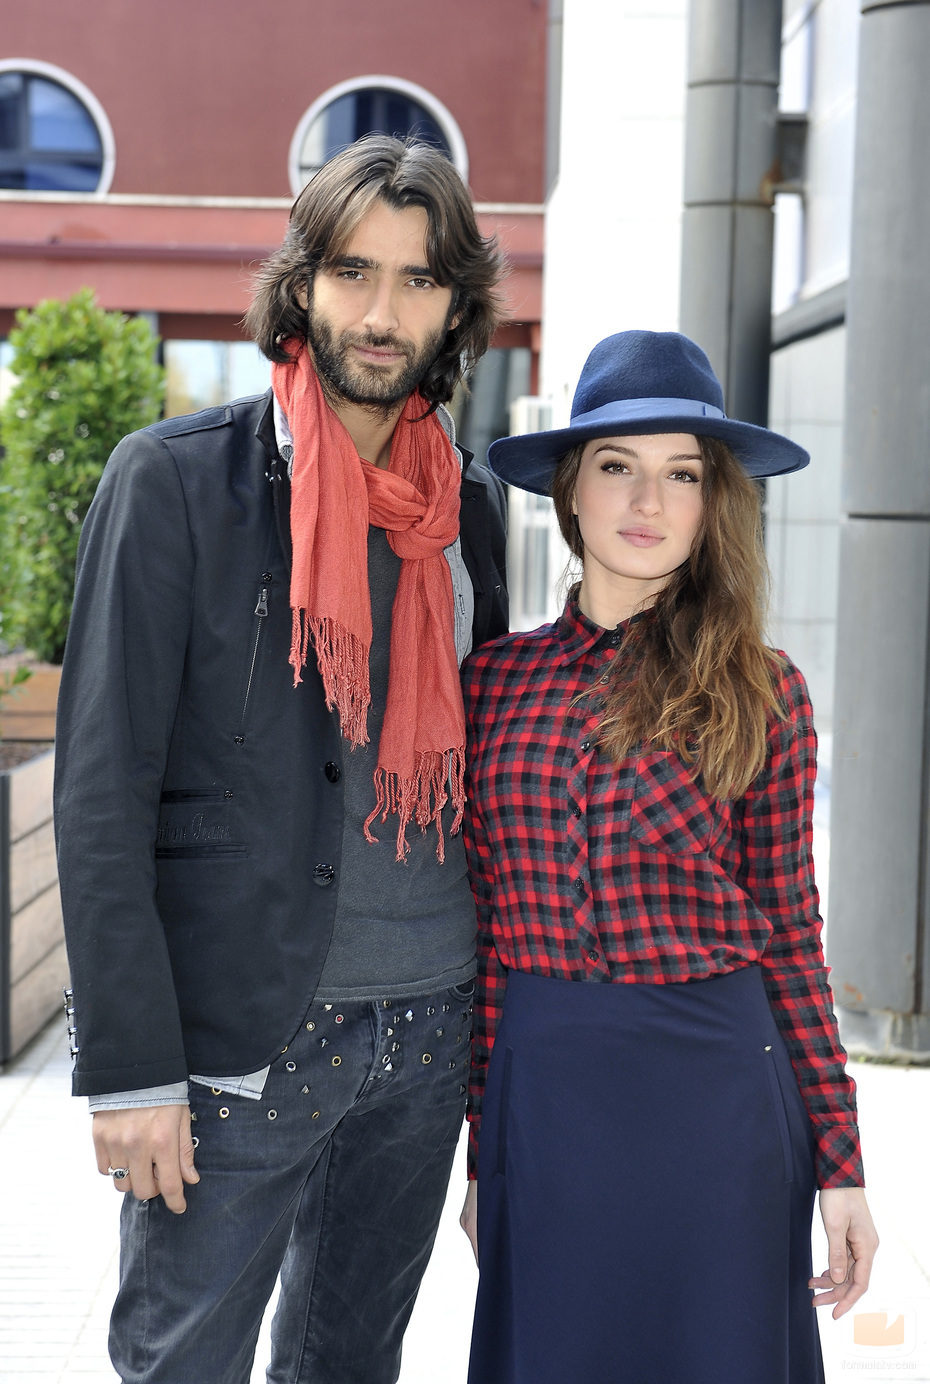 Aitor Luna y María Valverde protagonizan 'La fuga' en Telecinco